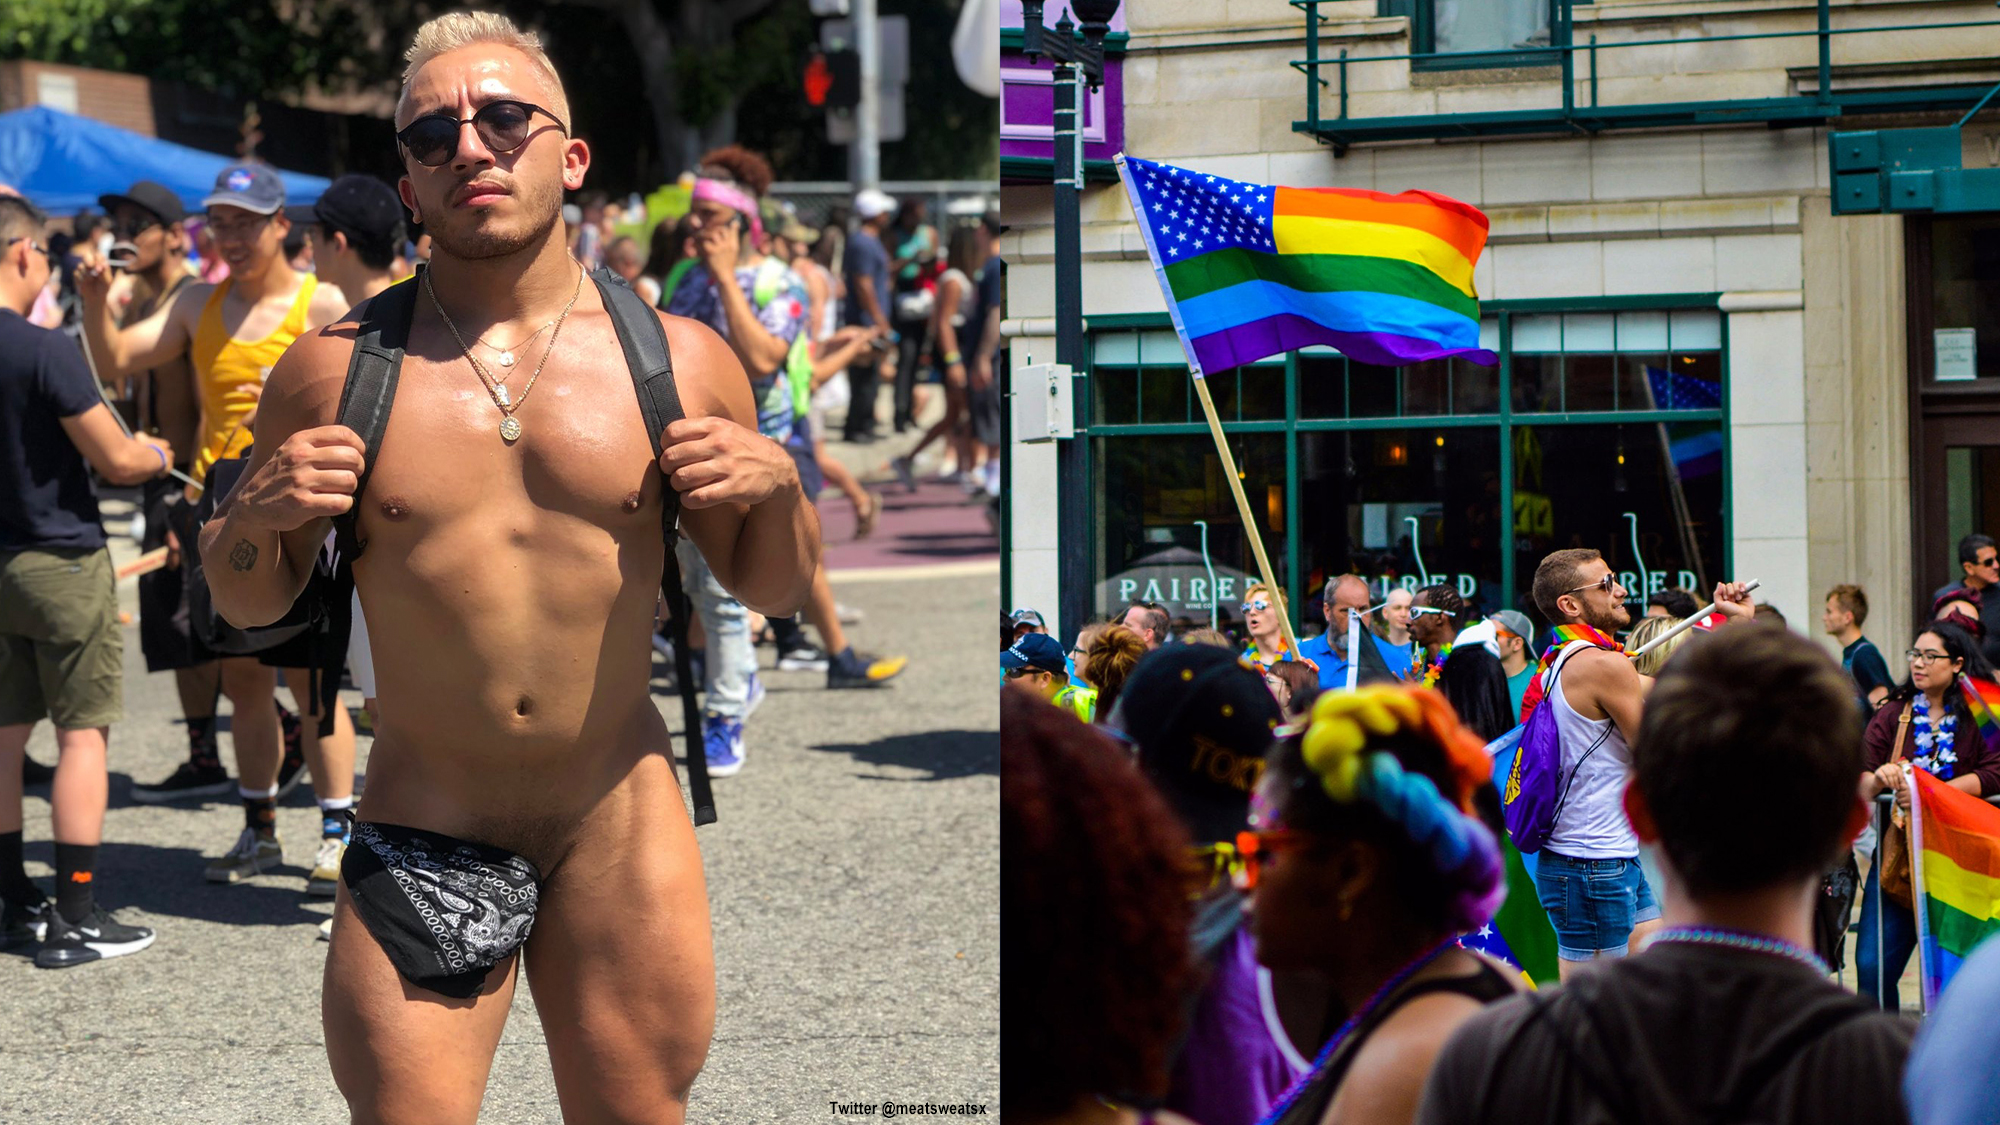 public nudity gay pride.